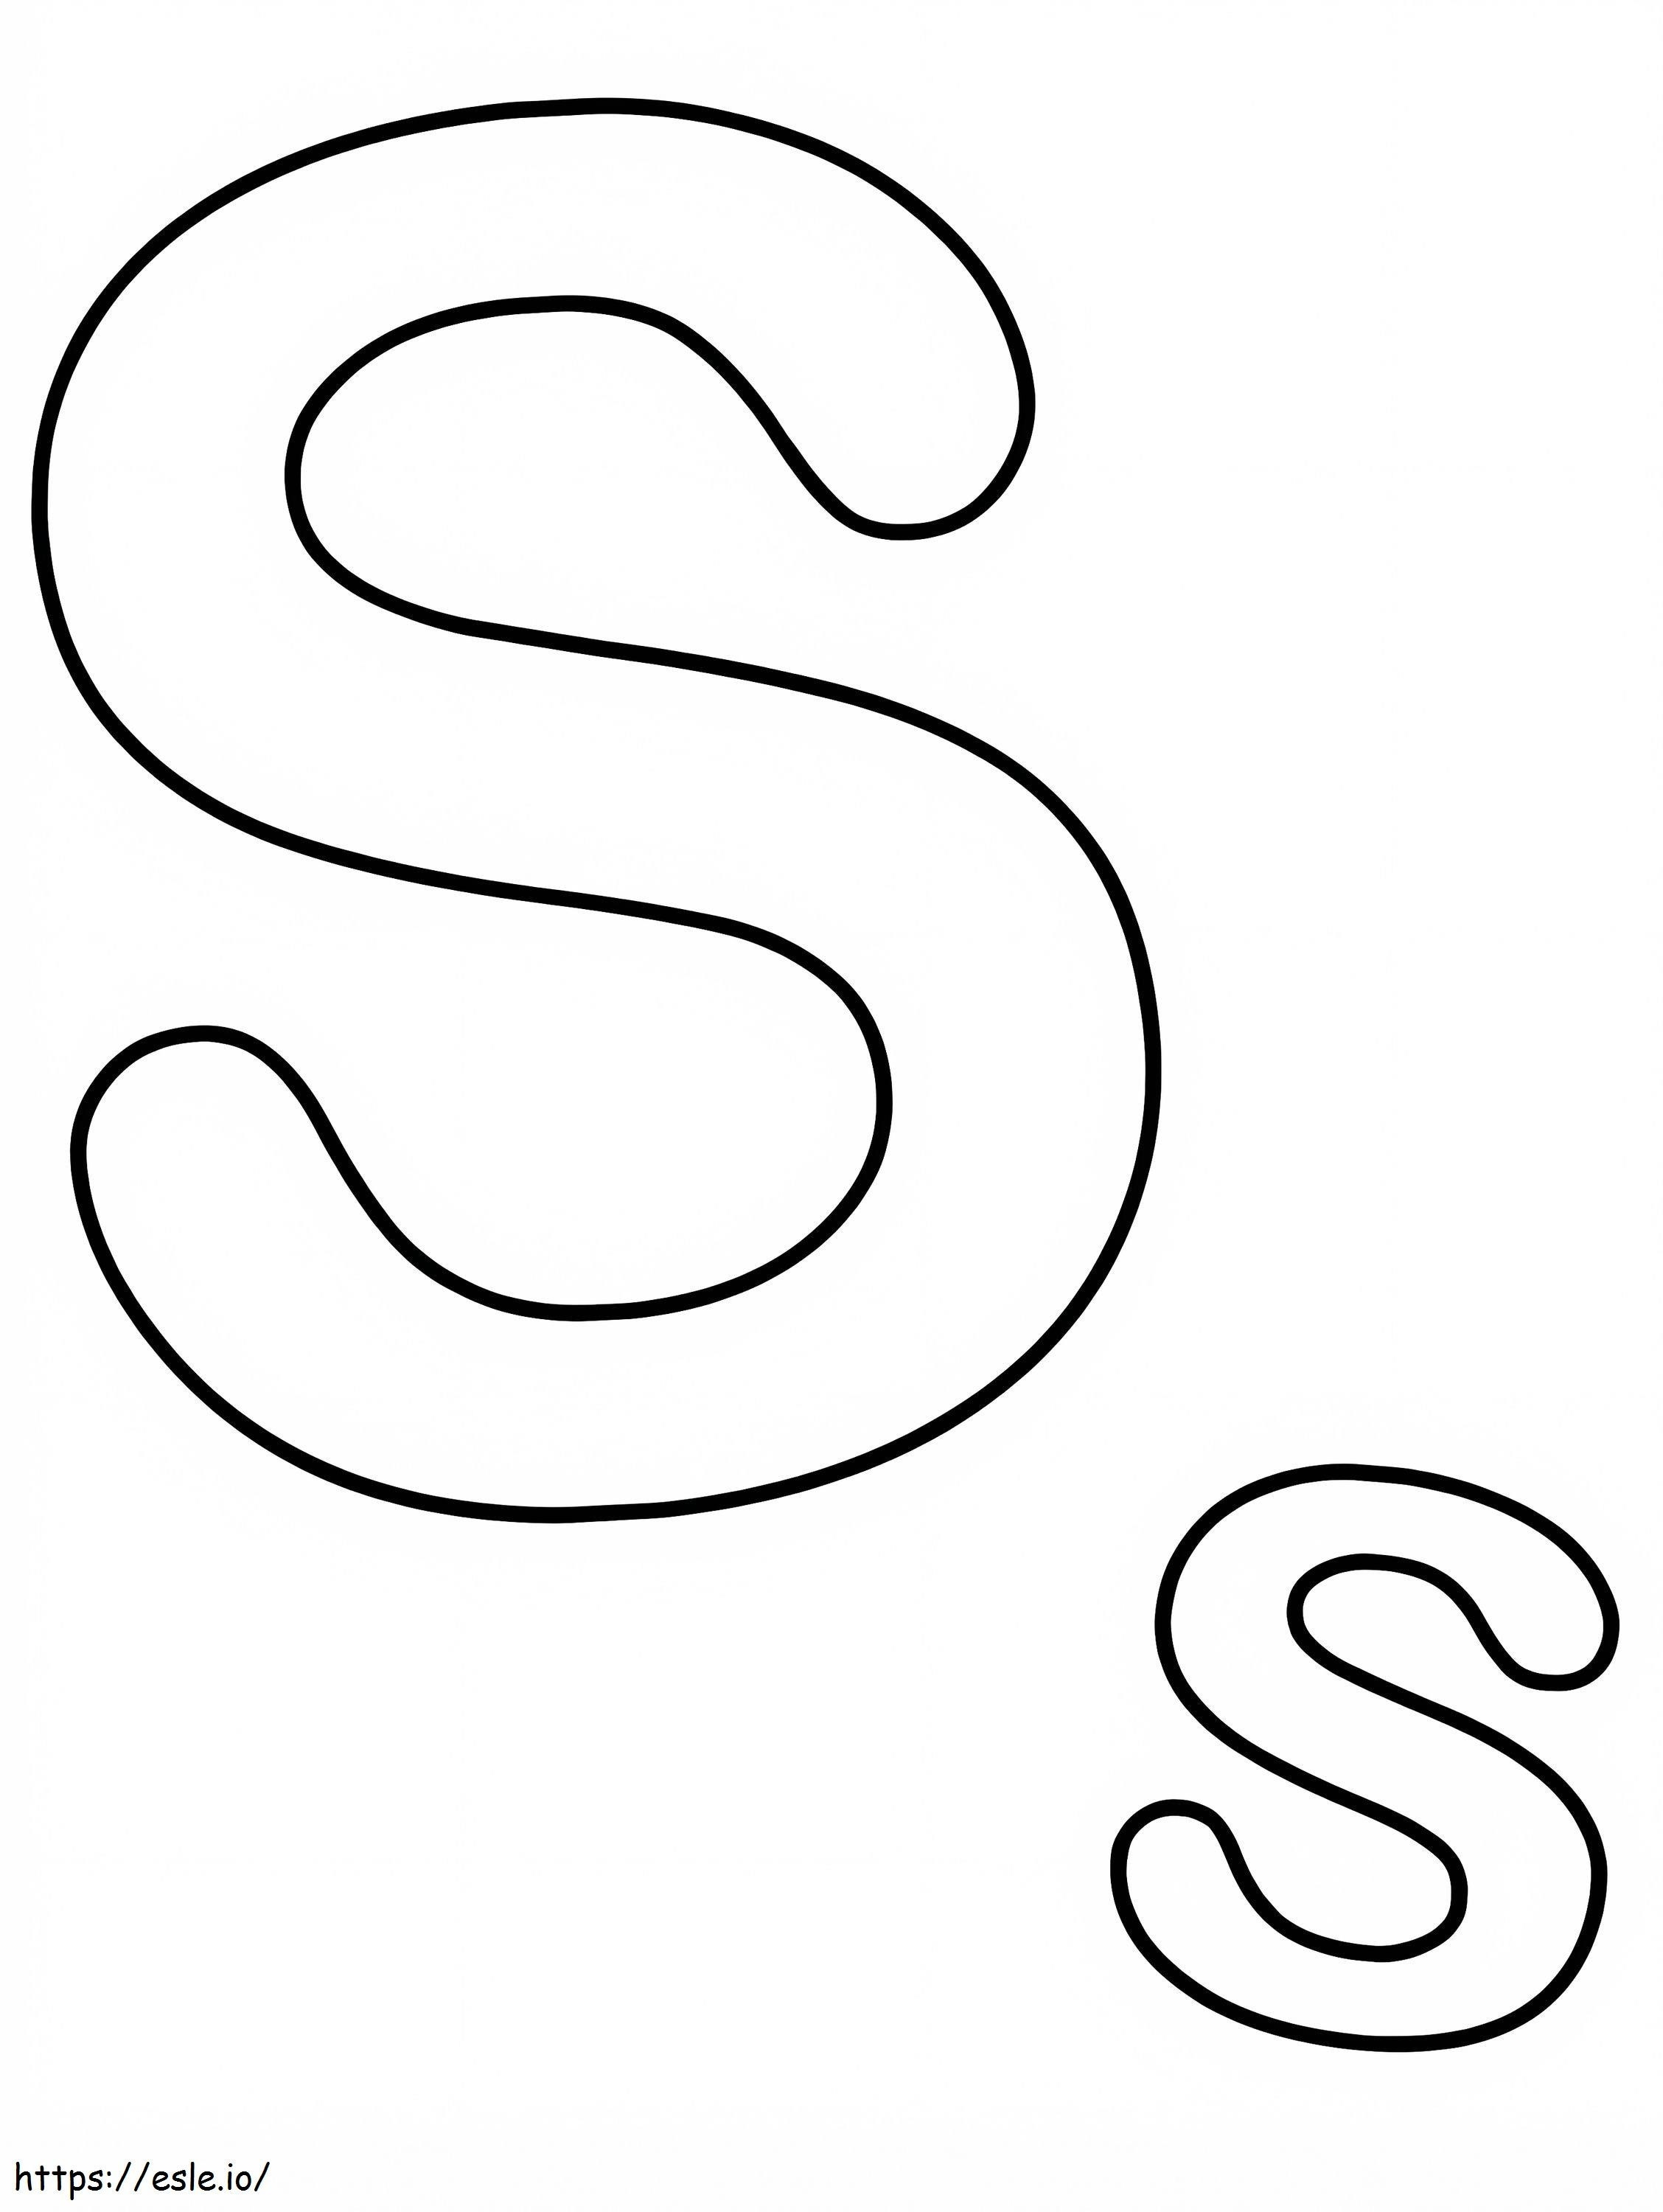 Coloriage Lettre S 2 à imprimer dessin